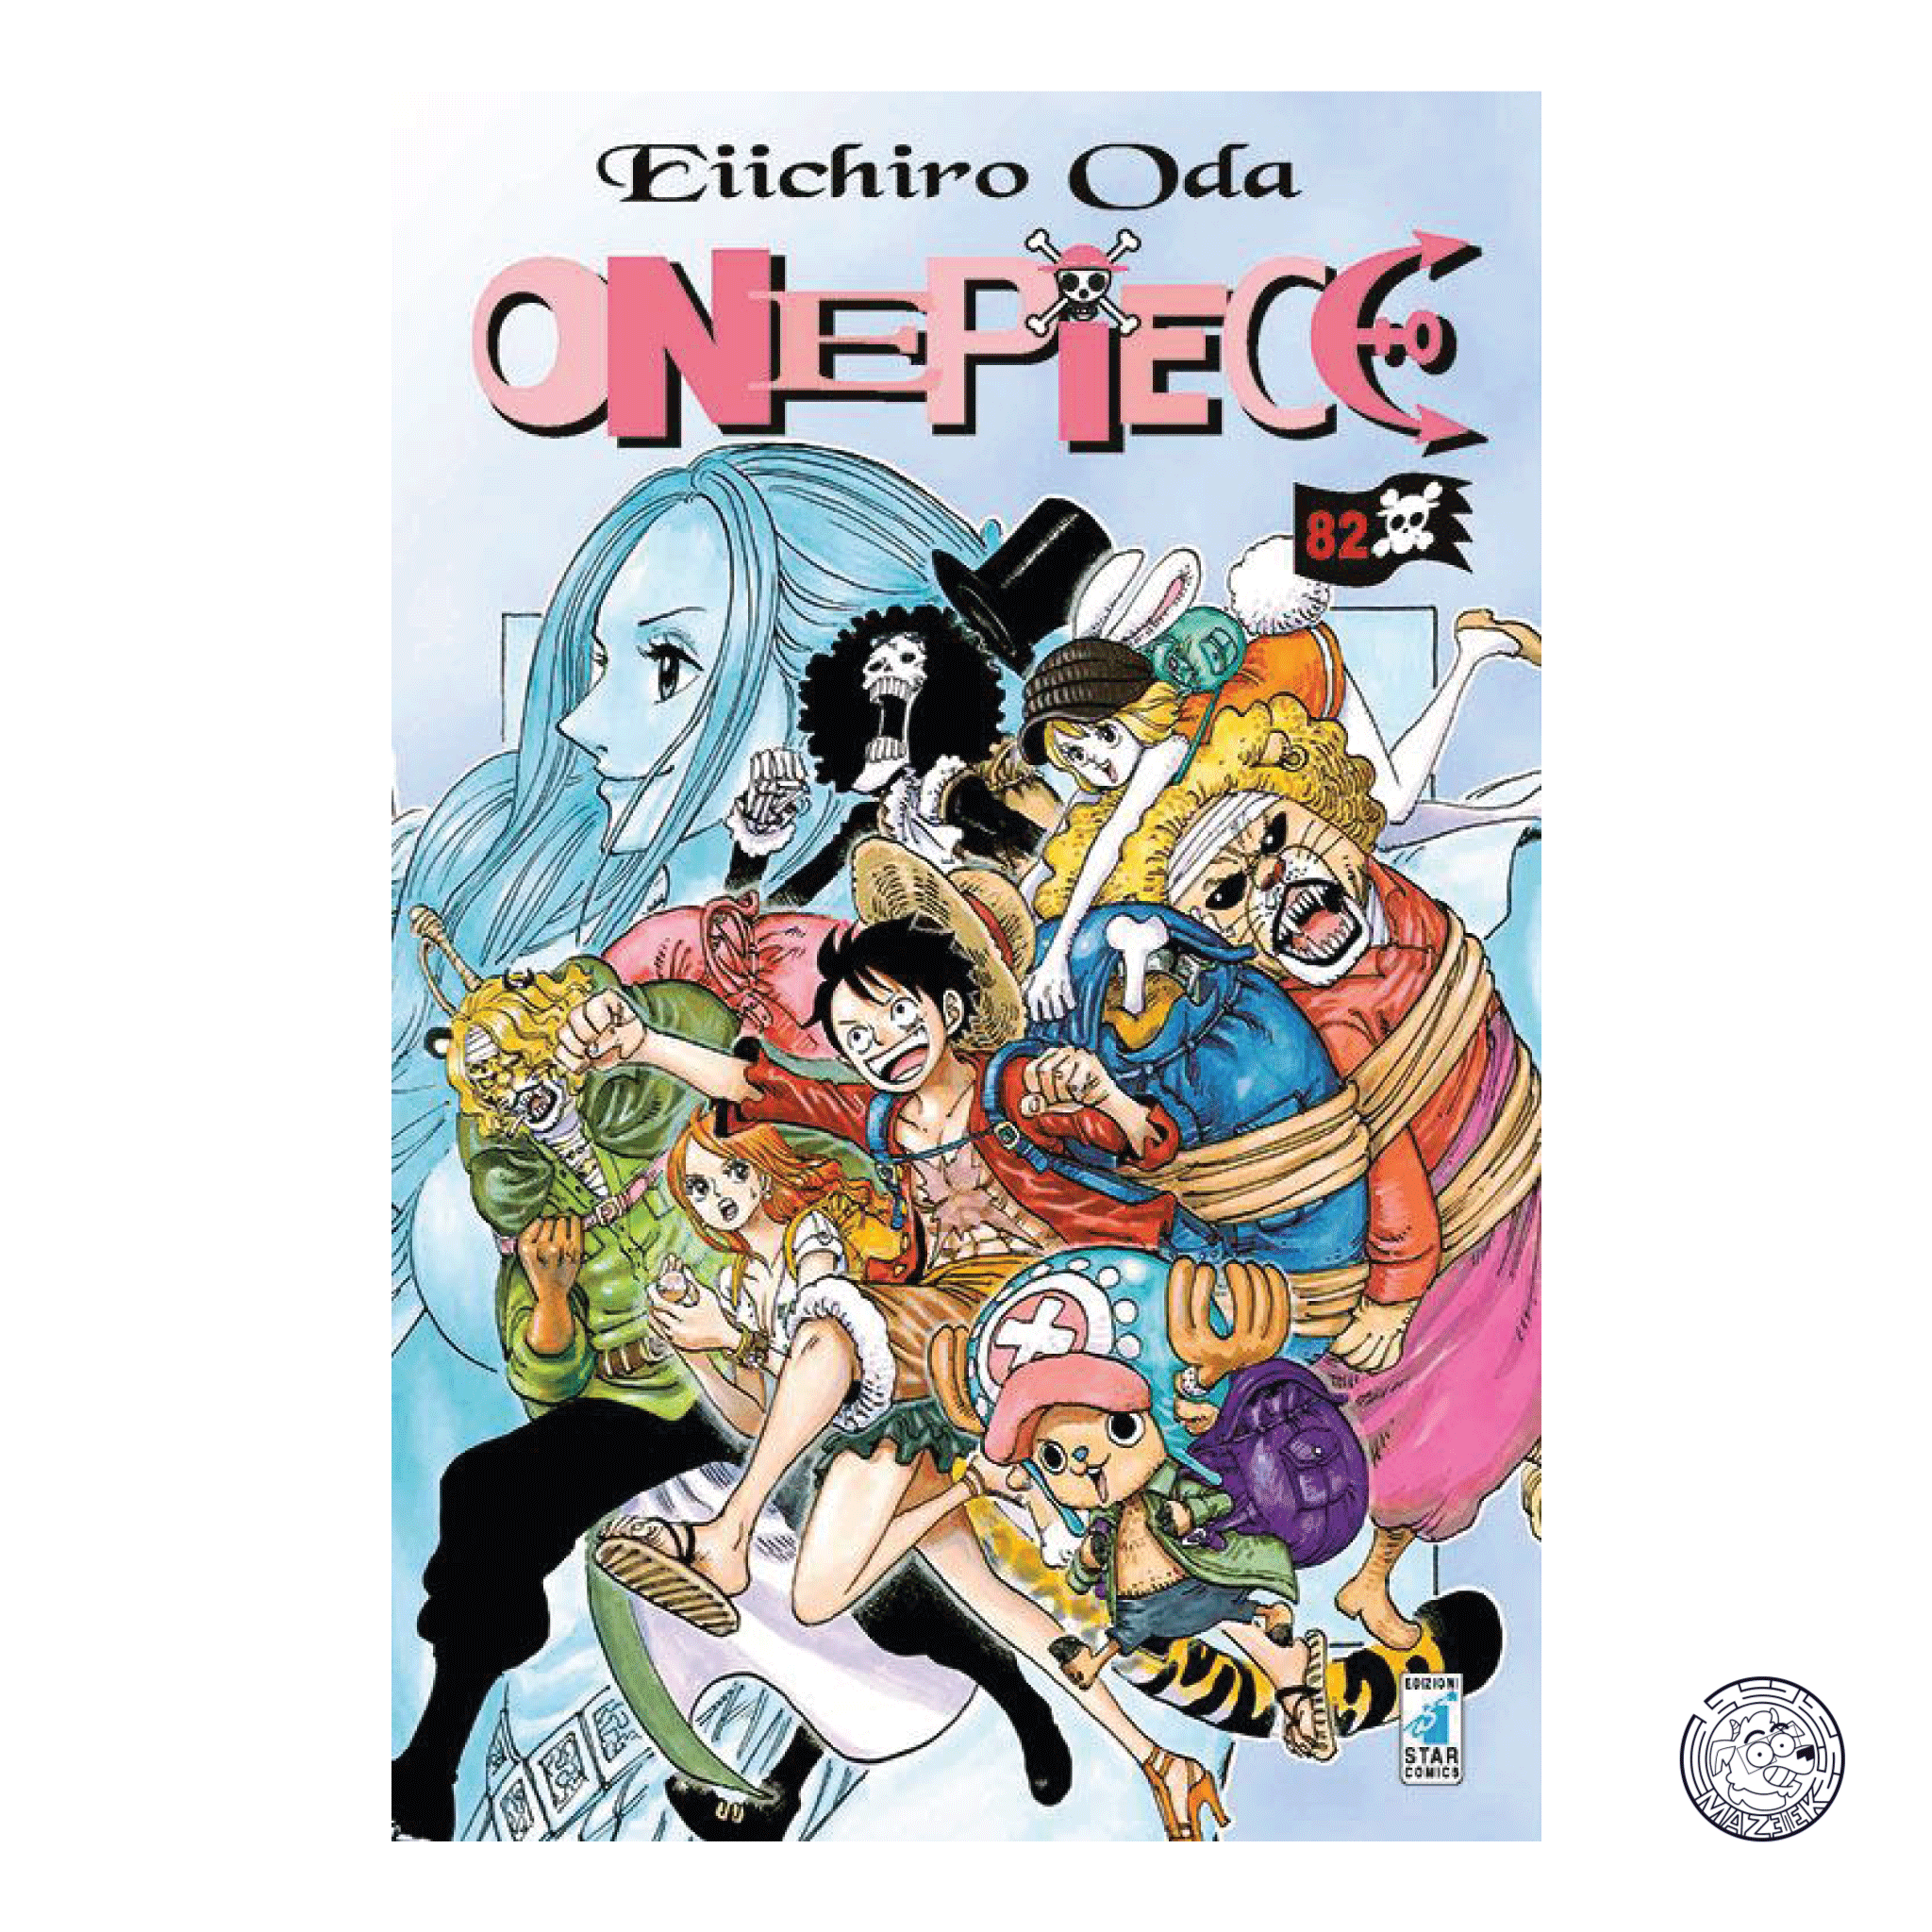 One Piece 82